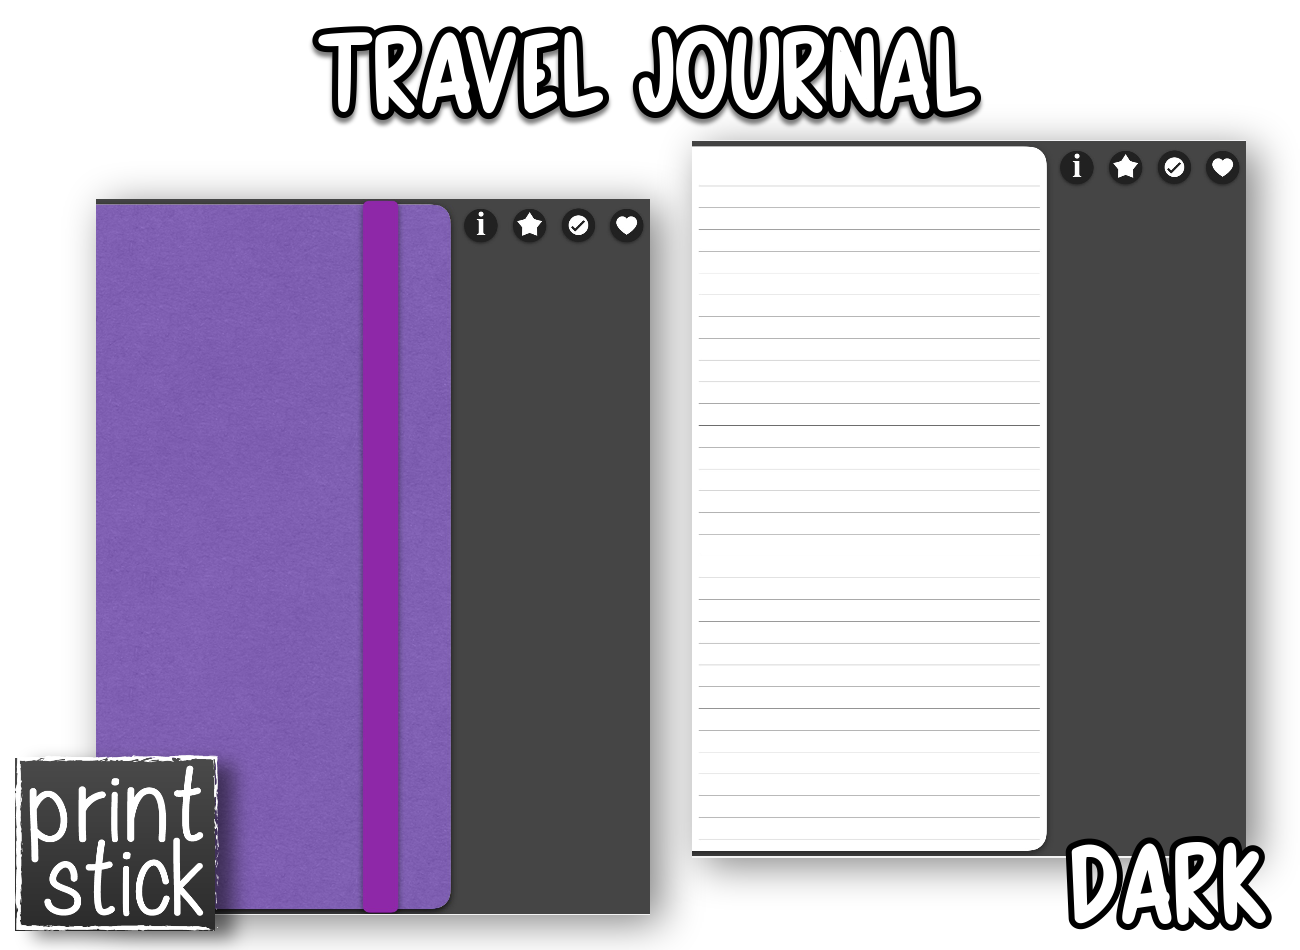 Travel Journal - Digital Notebook - Print Stick